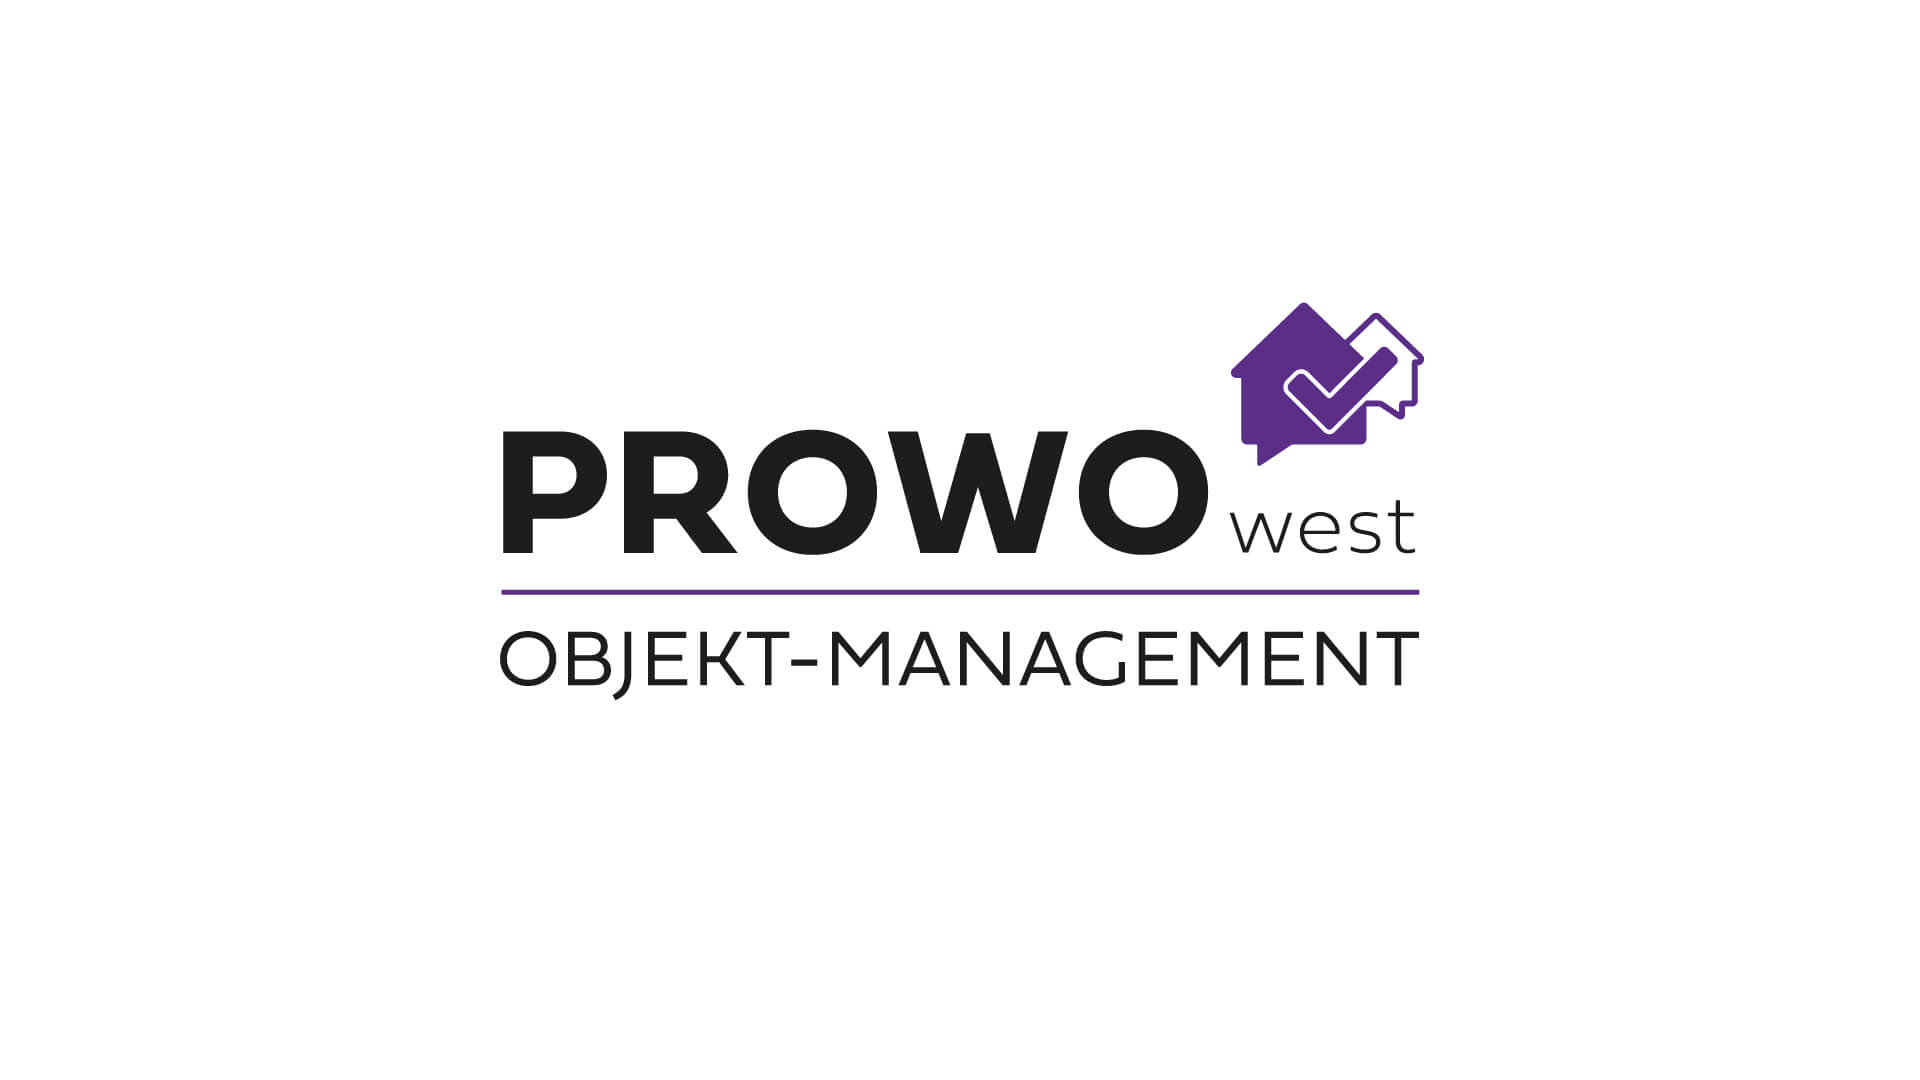 (c) Prowo-west.de